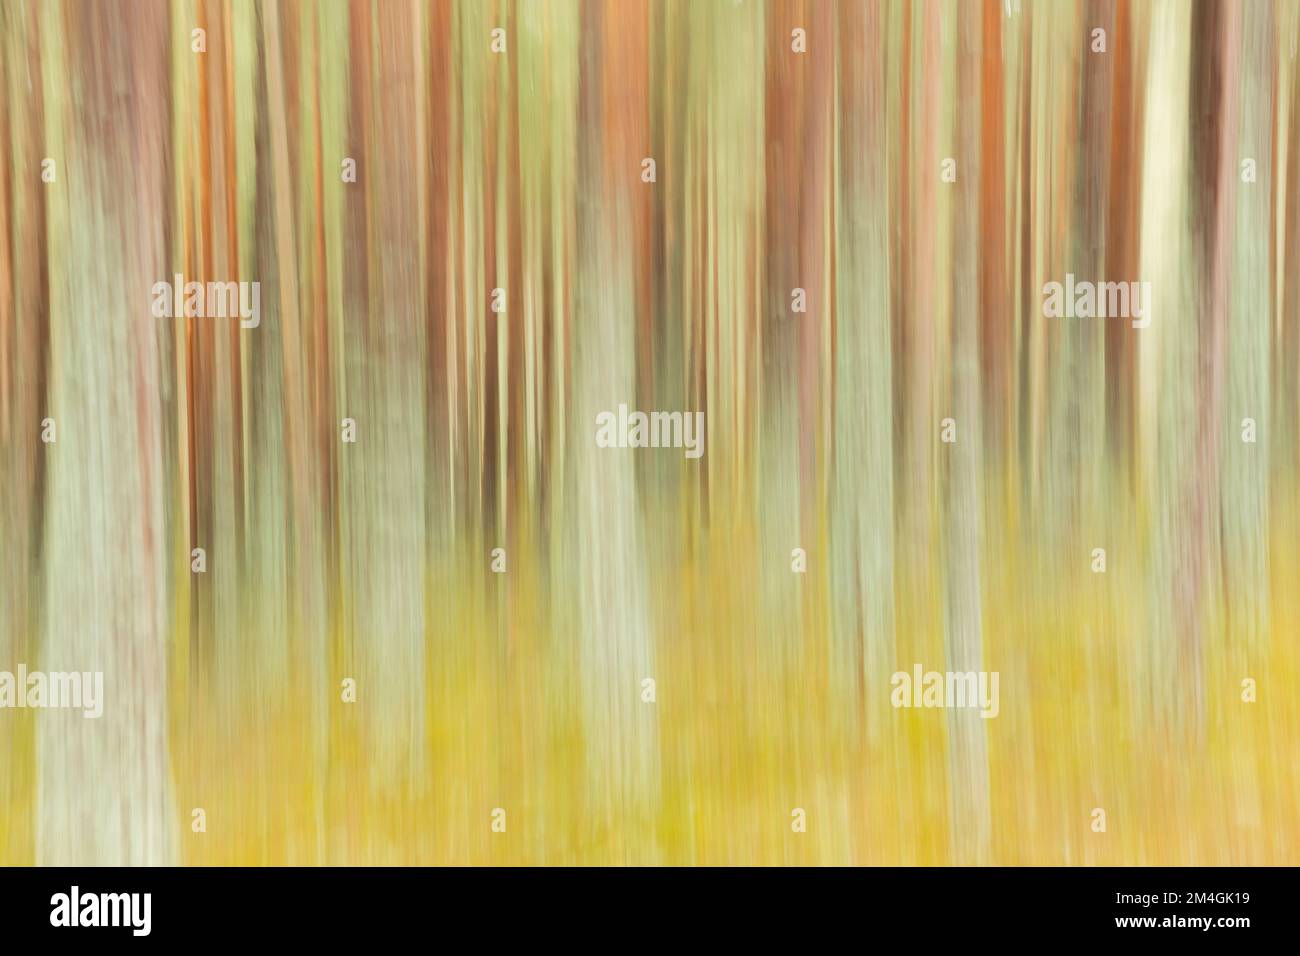 PIN écossais Pinus sylvestris, empreinte forestière artisanale, Loch VAA, Highlands, Écosse, Royaume-Uni, février Banque D'Images